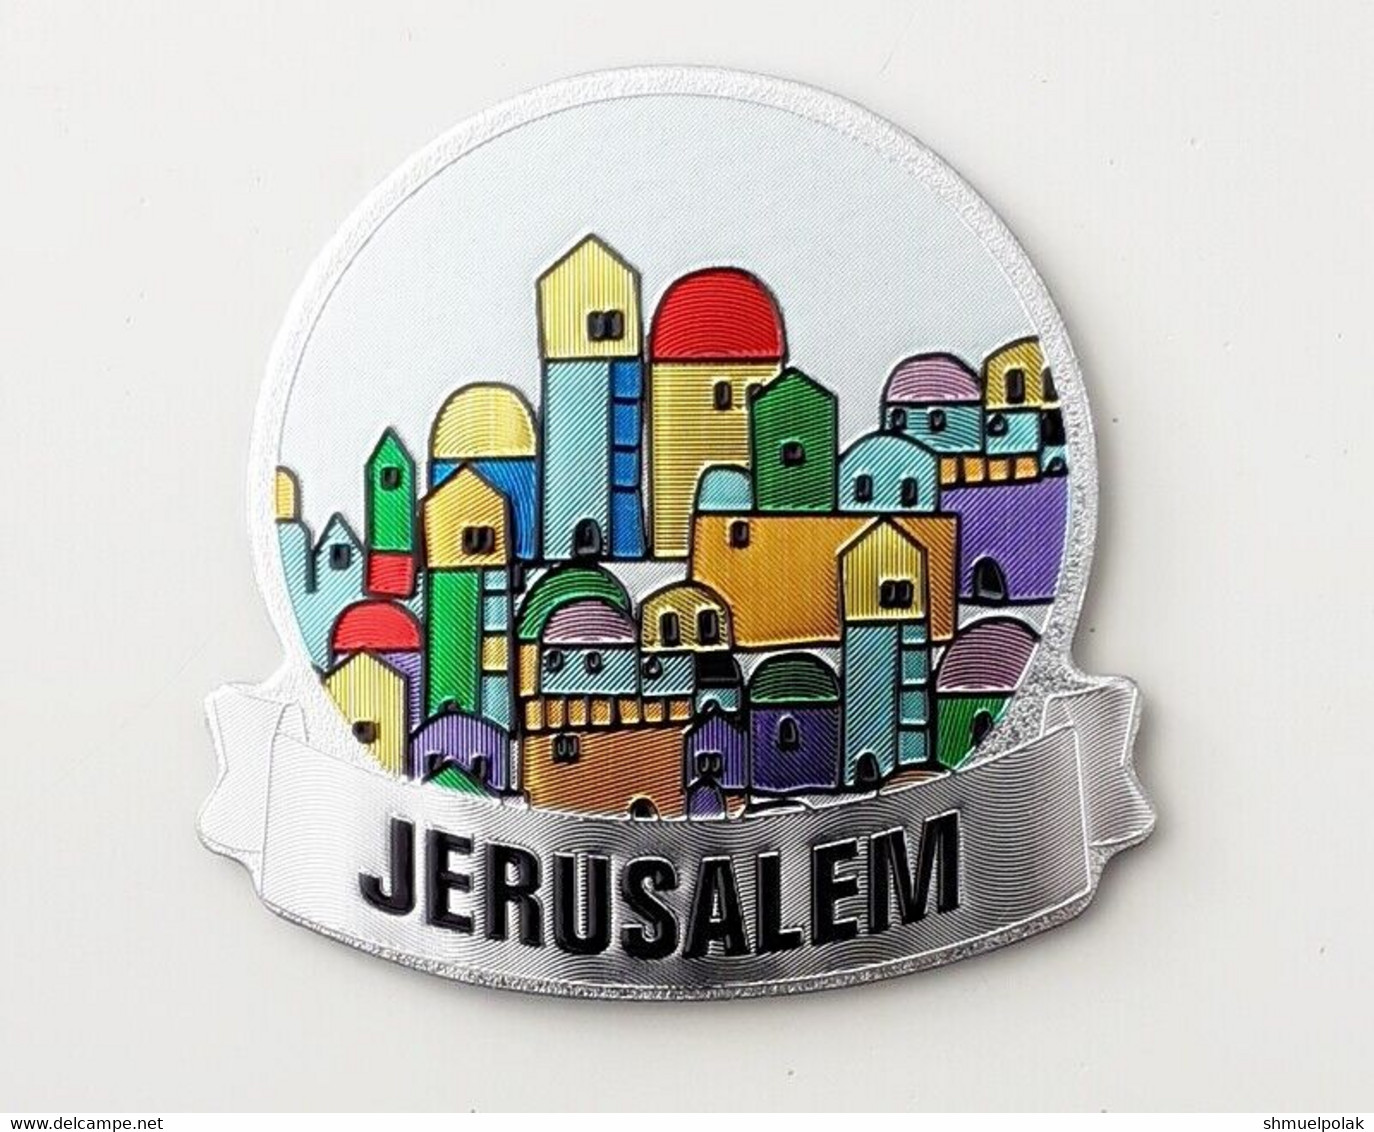 ISRAEL TOURISM SOUVENIR "JERUSALEM" FRIDGE MAGNET - Tourism